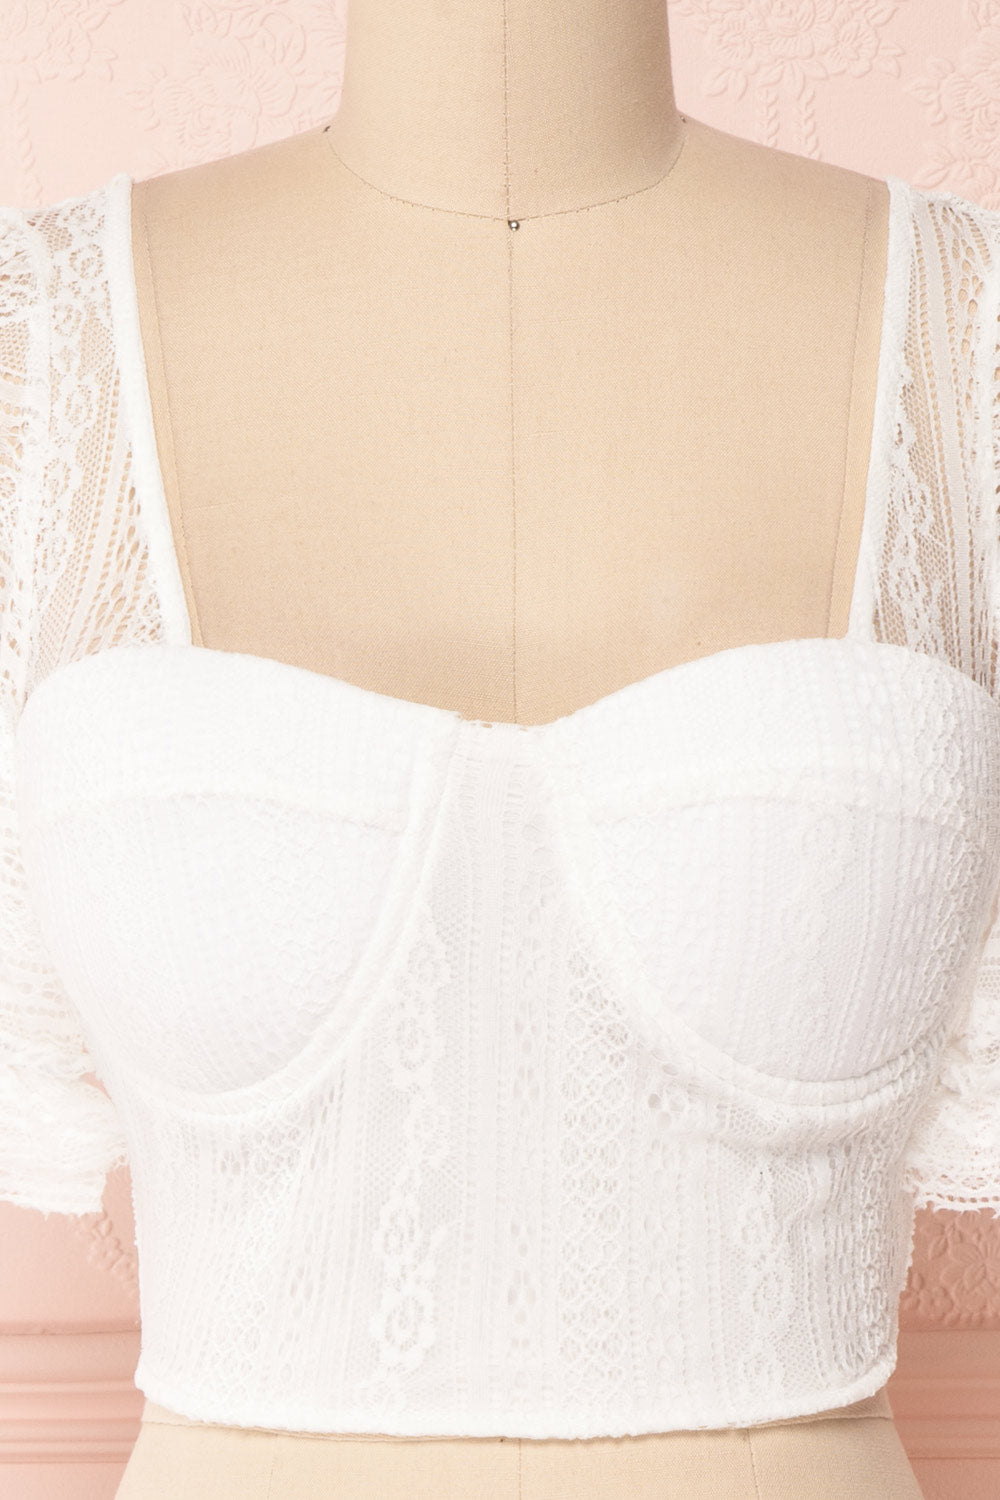 Nishio Bianca White Lace Crop Top | Boutique 1861 2